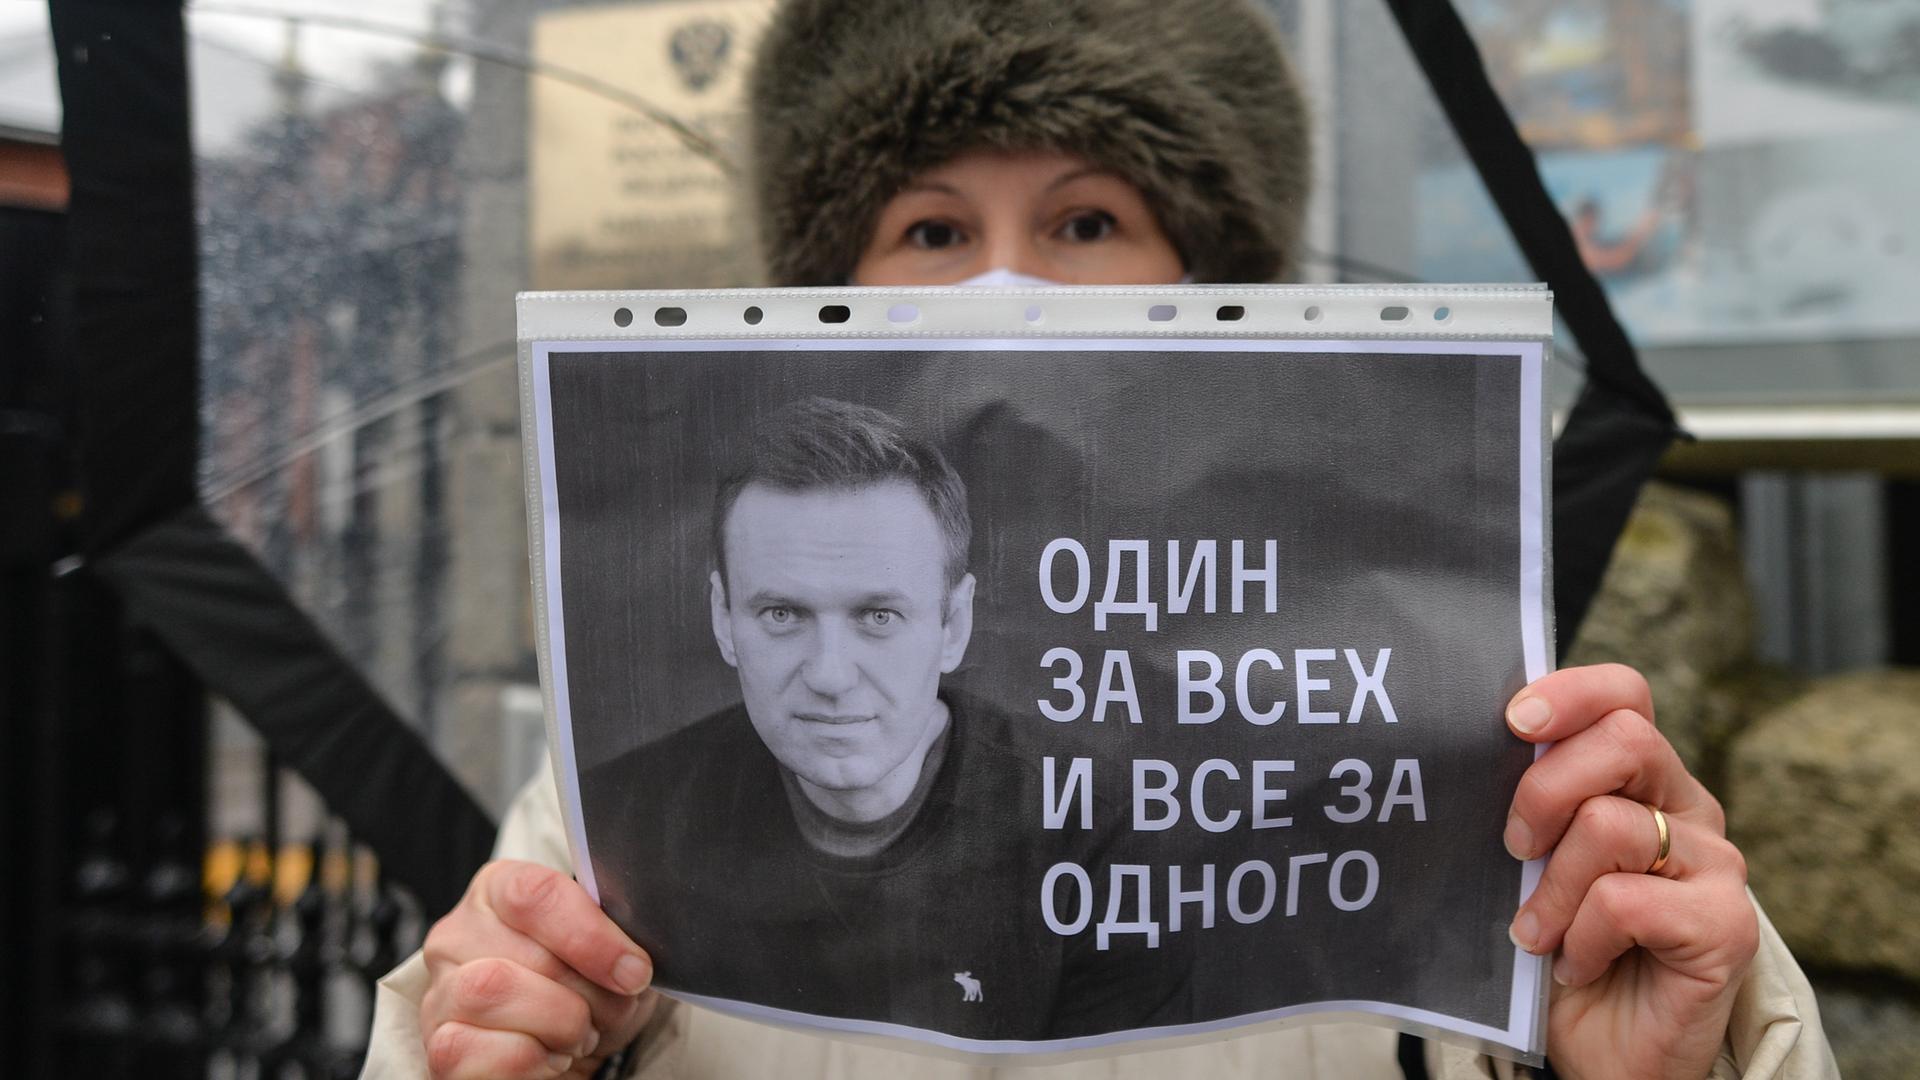 Eine Frau mit Pelzmütze hält eine schwarz-weiß-Kopie vor ihr Gesicht, auf dem Nawalny zu eine Reihe von Zahlen und Buchstaben zu sehen sind.